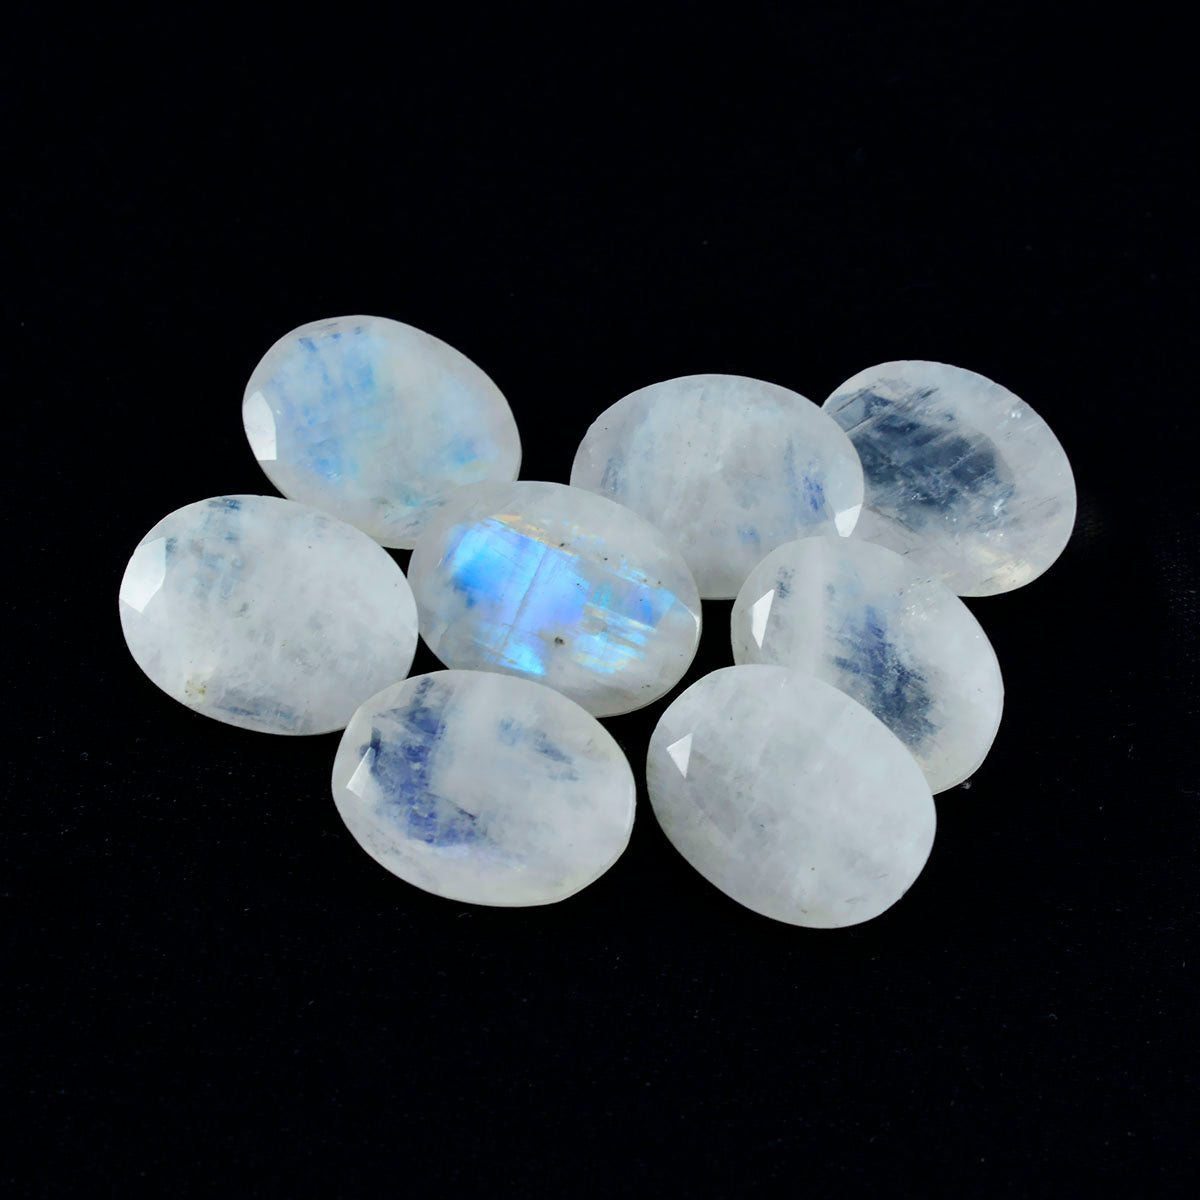 riyogems 1шт белый радужный лунный камень ограненный 7x9 мм овальной формы +1 драгоценный камень качества